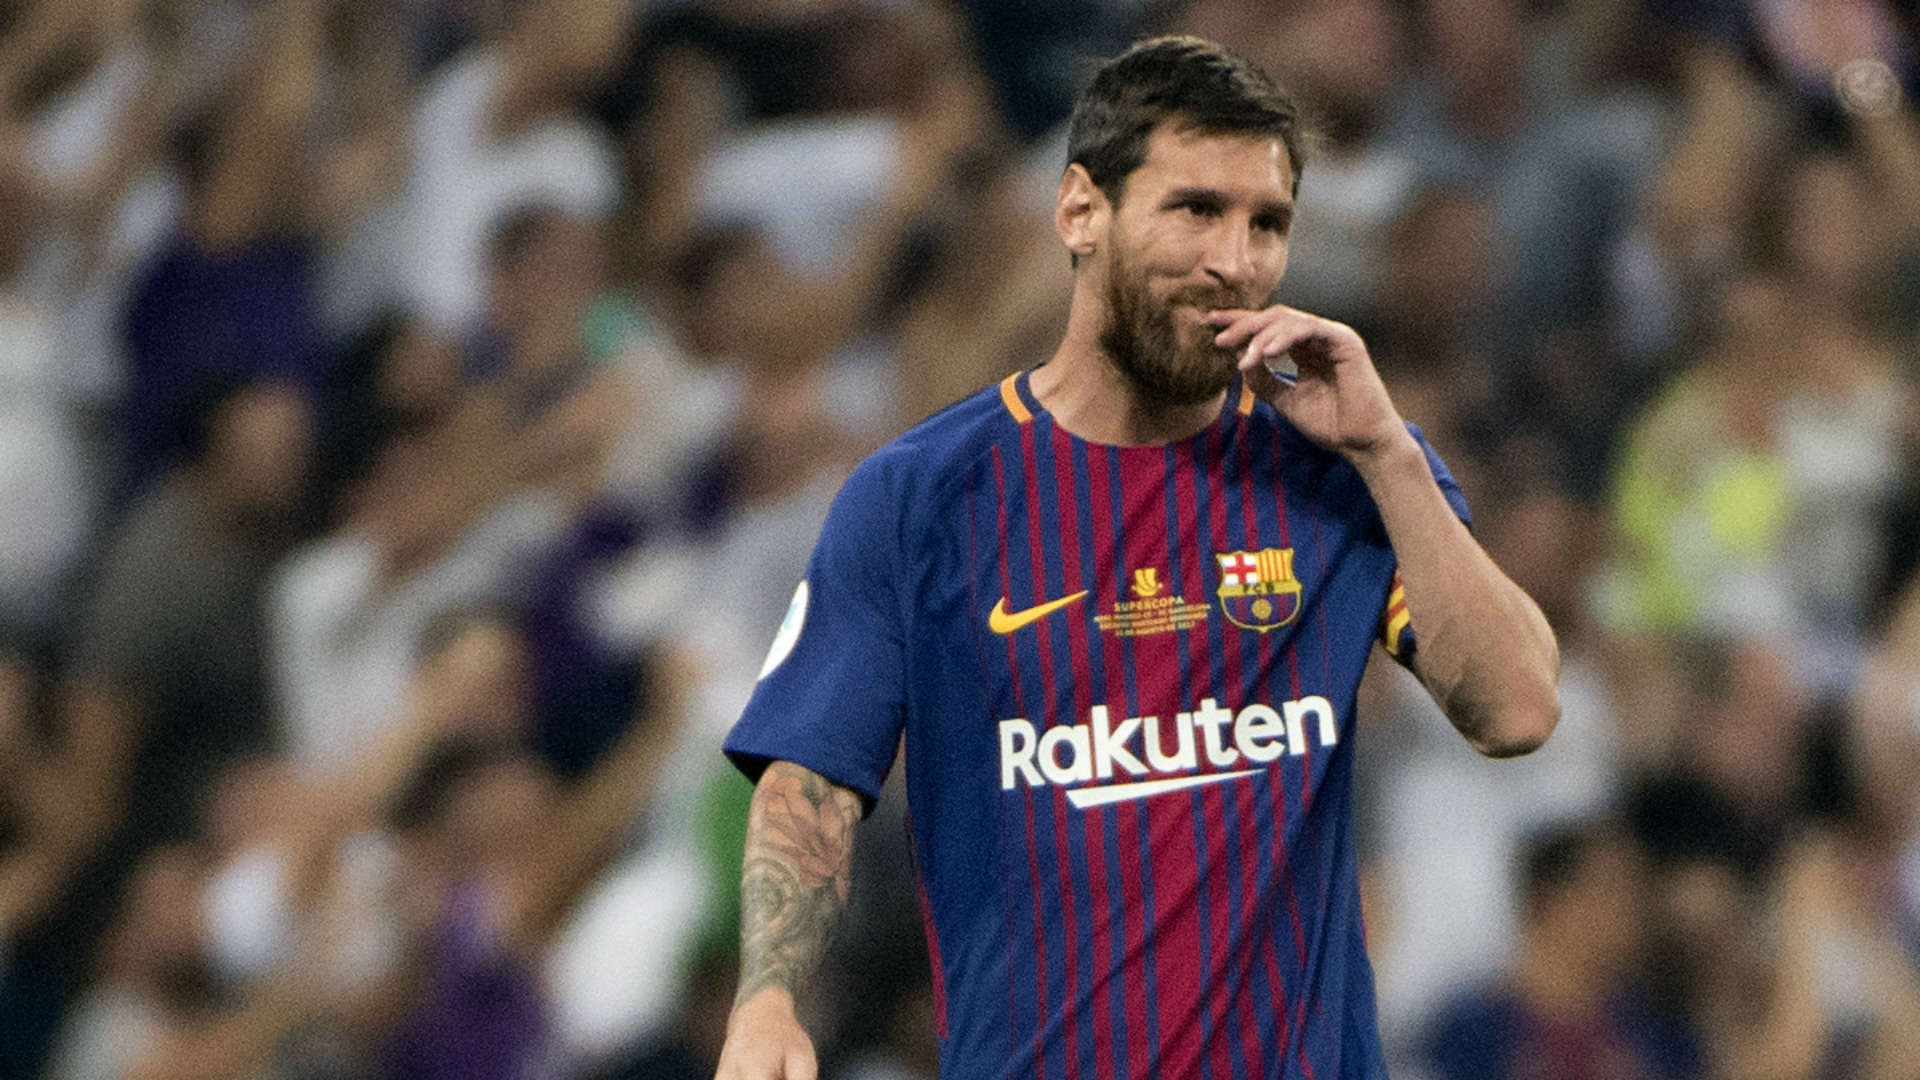 Sẽ có rất nhiều dấu hỏi cho thể lực của Messi trong trận đấu này